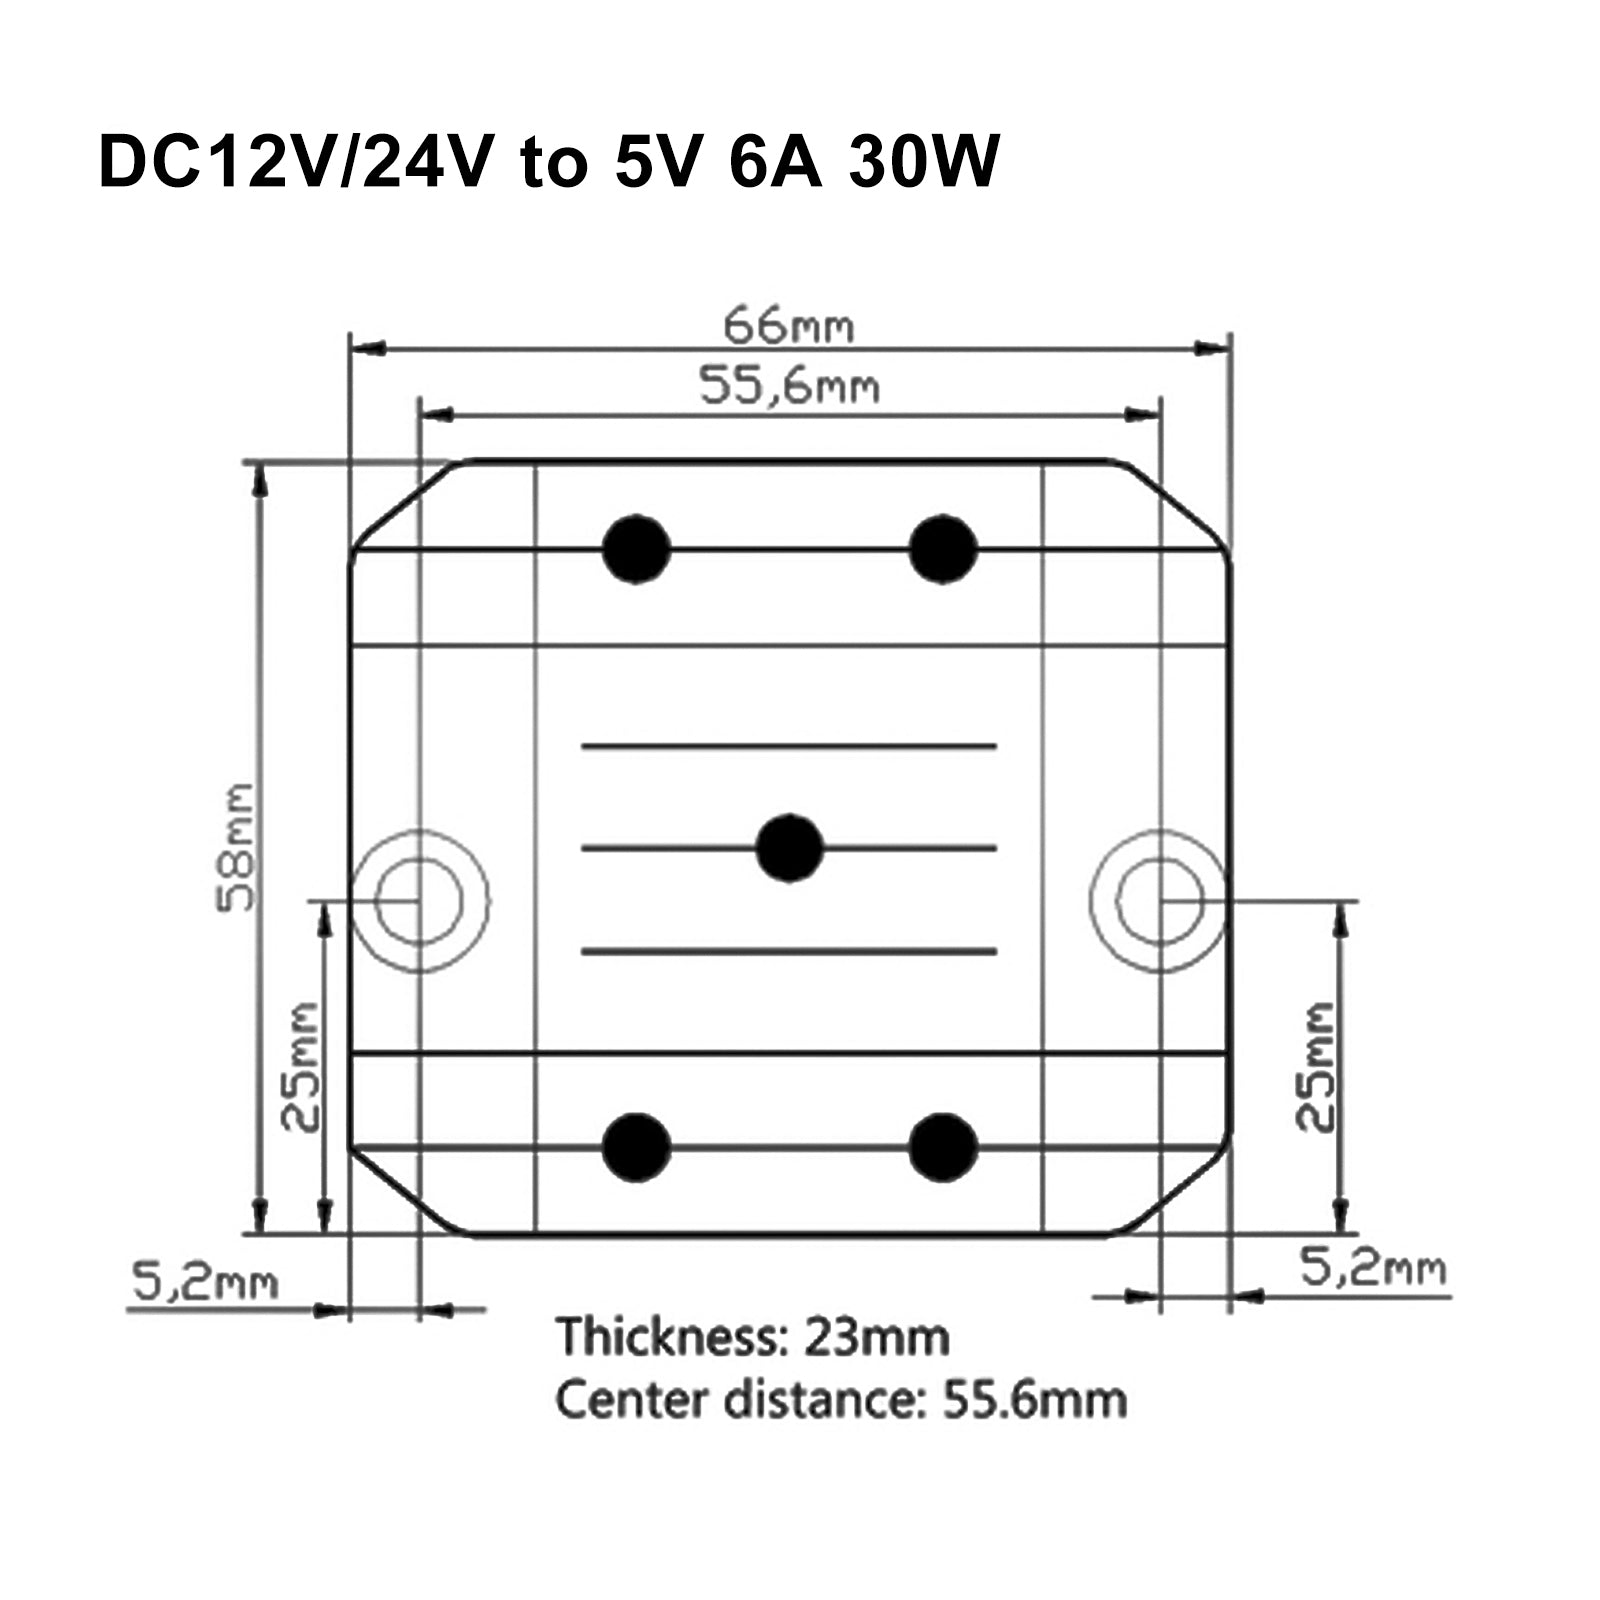 Régulateur de tension cc convertisseur abaisseur DC 12/24V à 5V 6A 30W réducteur abaisseur